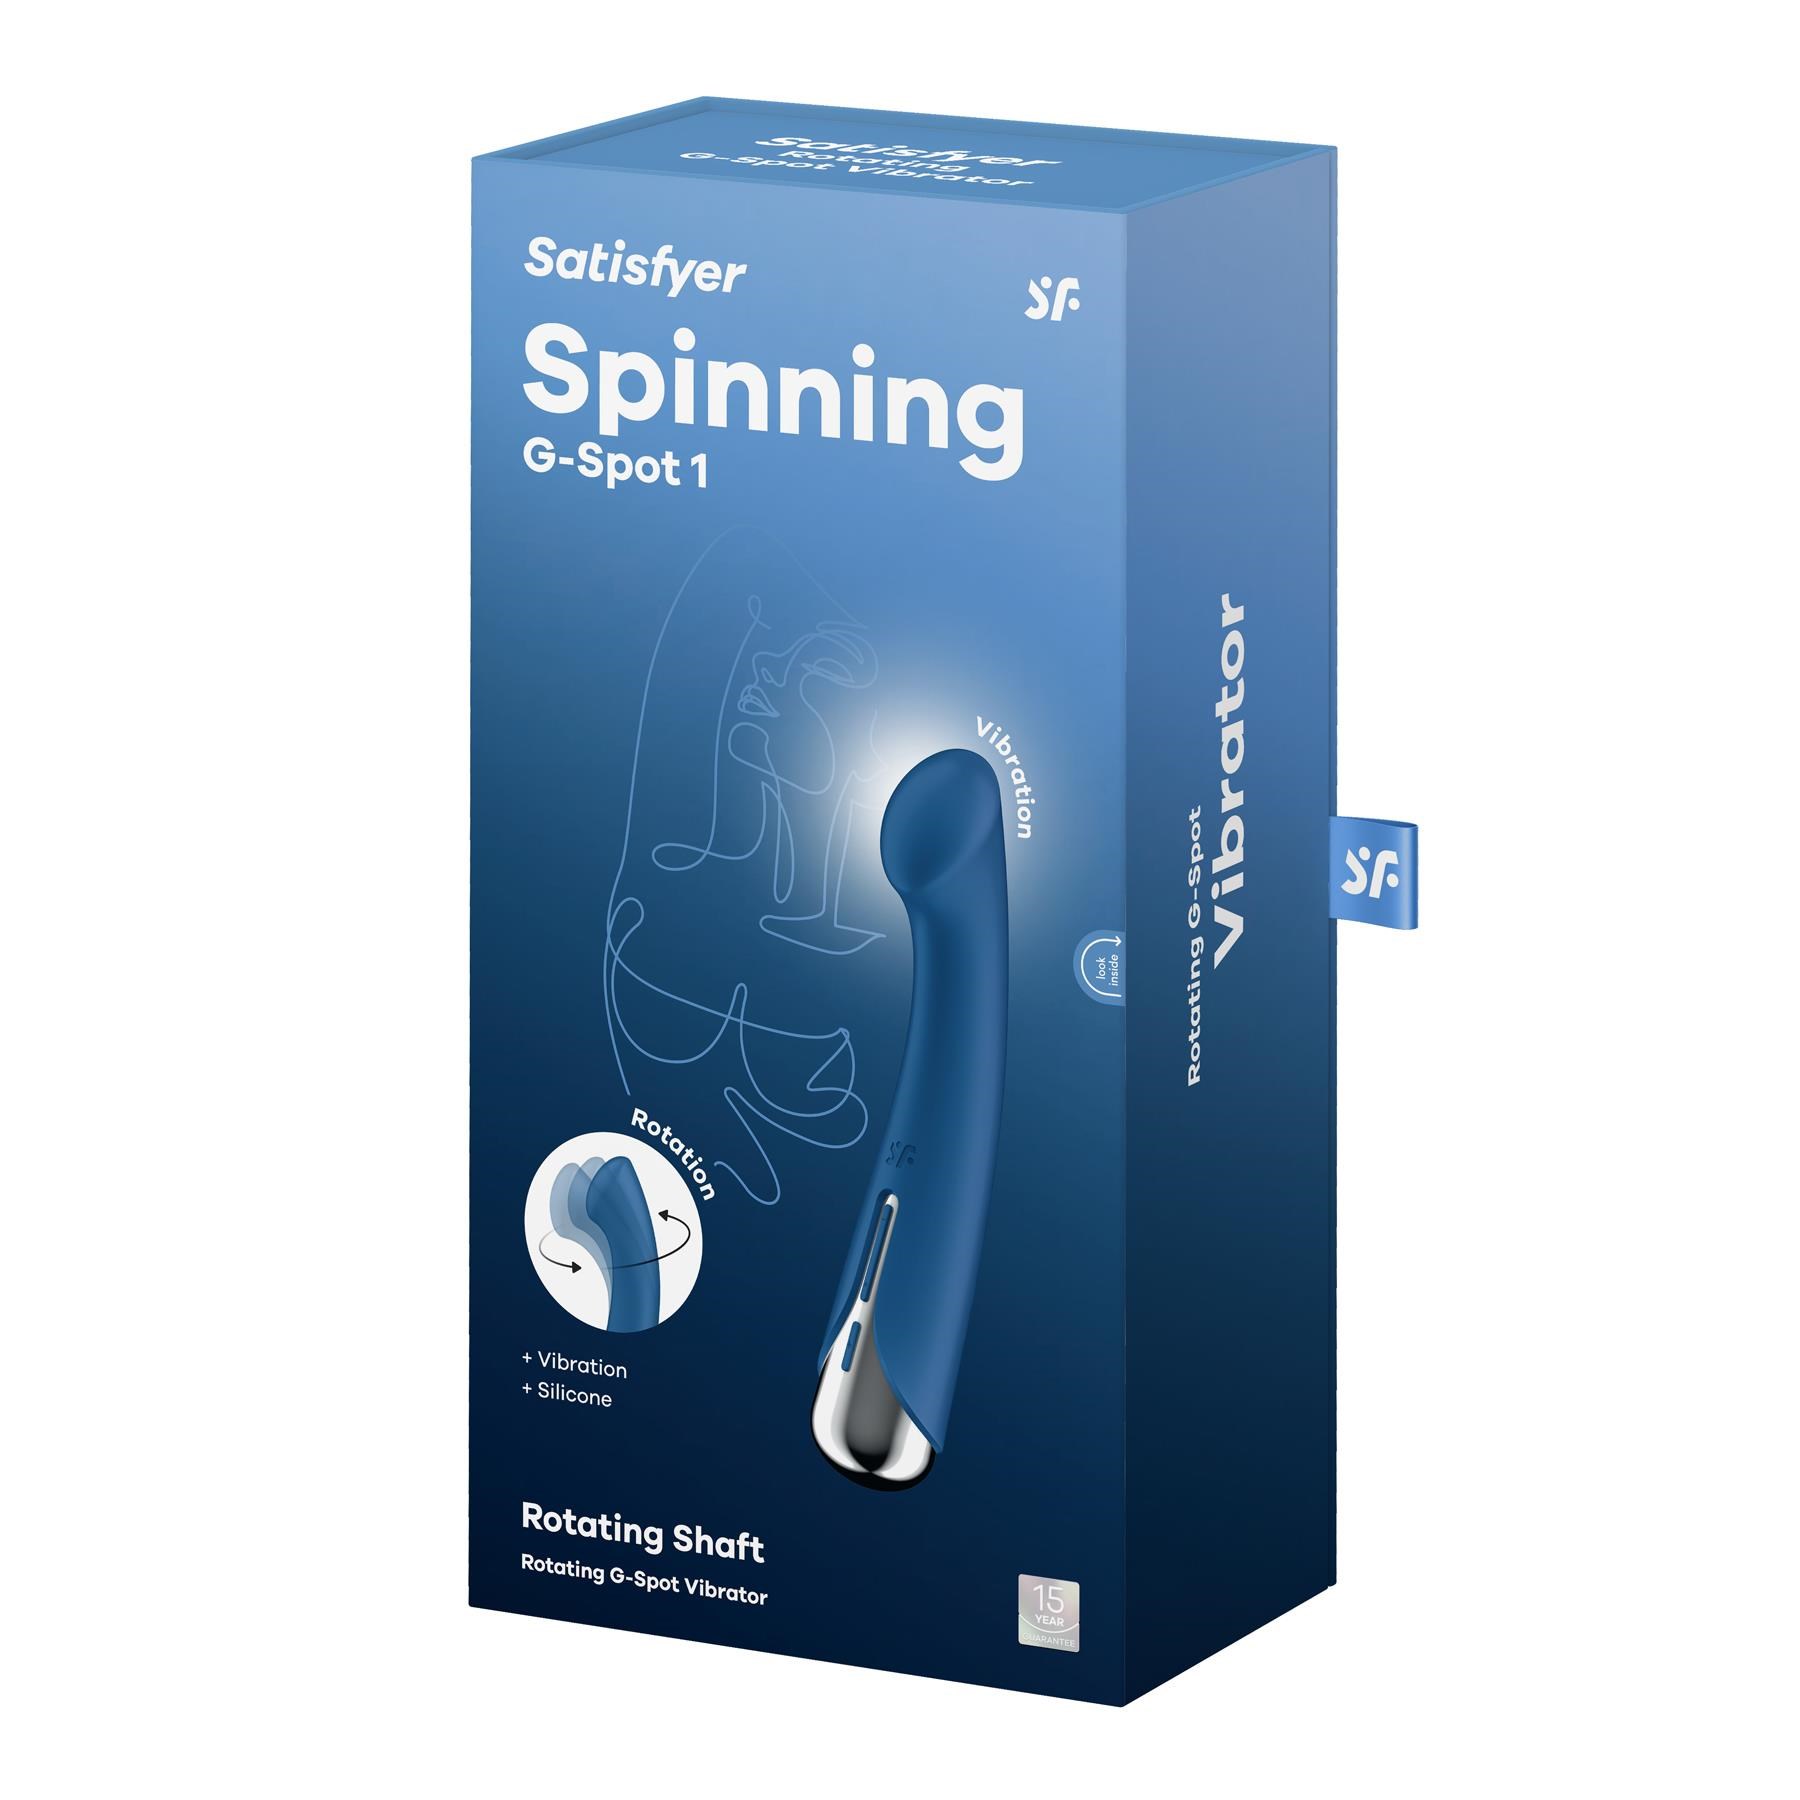 Satisfyer Spinning G-Spot Vibrator - Packaging Shot